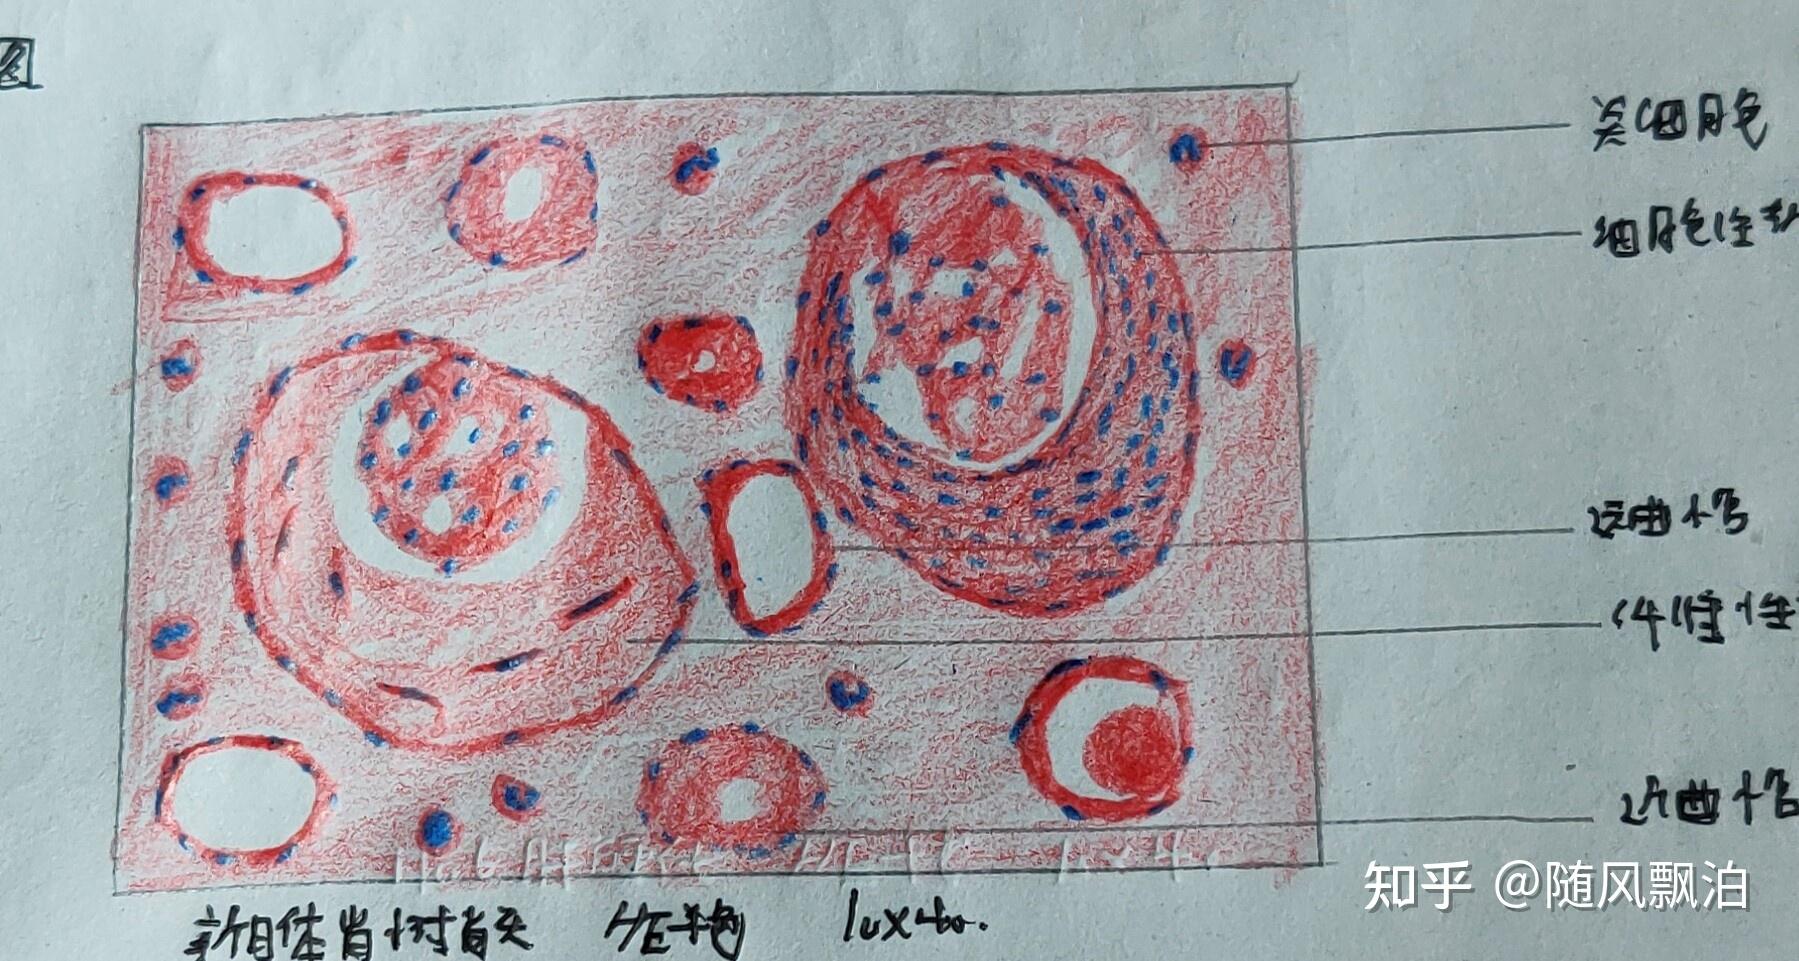 单核巨噬细胞手绘图片